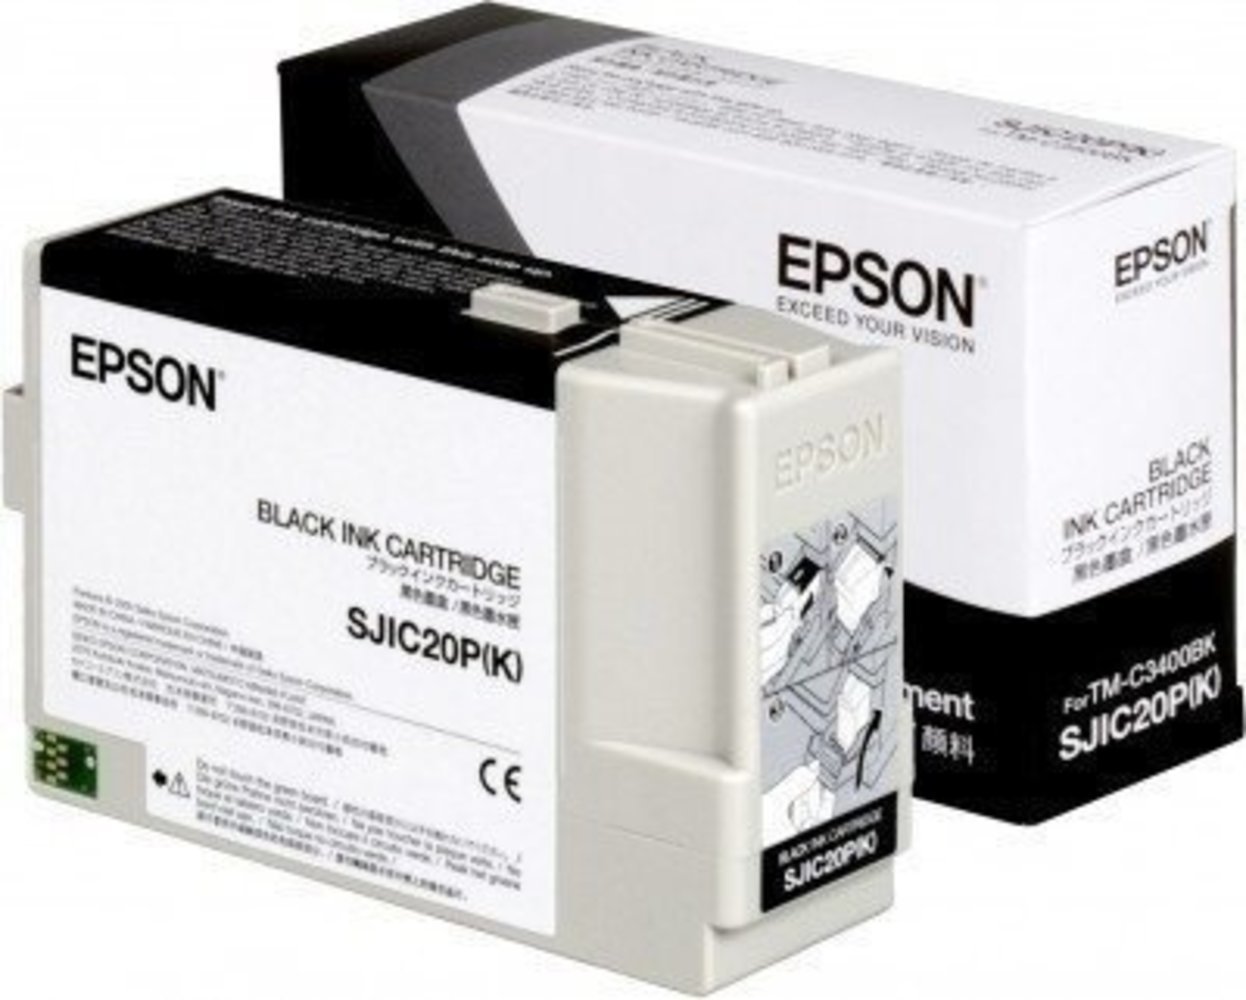 epson sjic20p(k) black ink cartridgeepso n sjic20p(k) black tintenpatrone für tm-